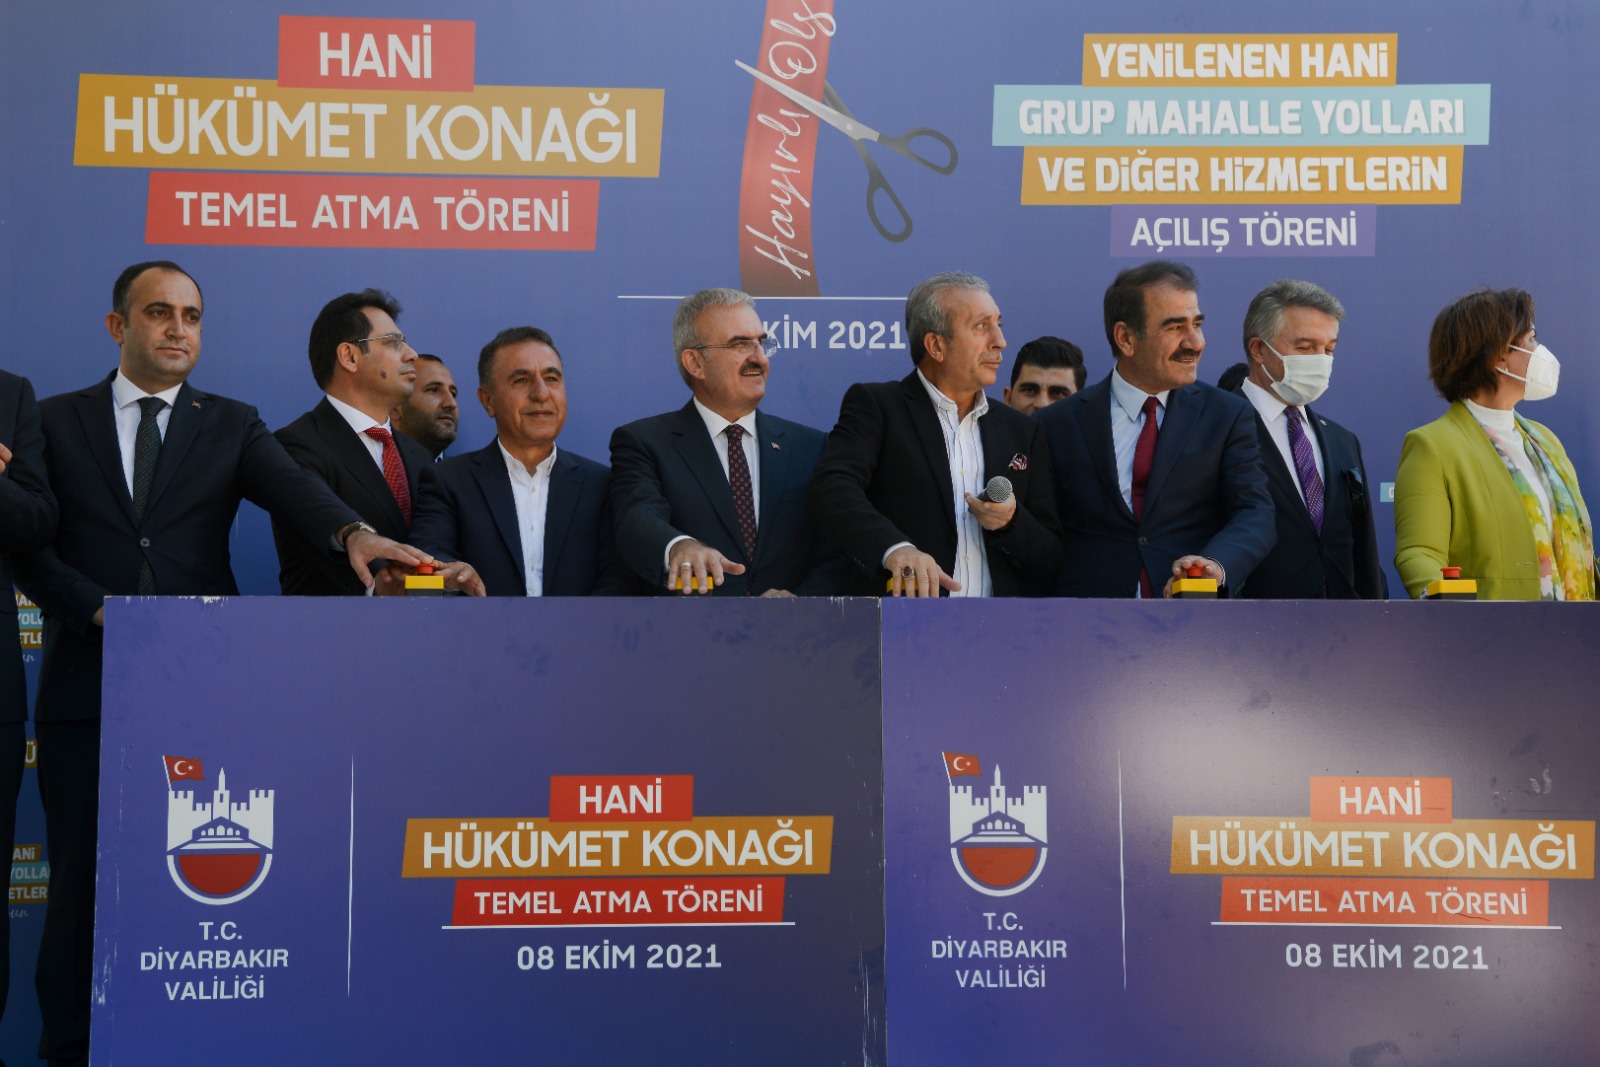 Vali Karaloğlu: Erdoğan Diyarbakır’a pozitif ayrımcılık yapıyor